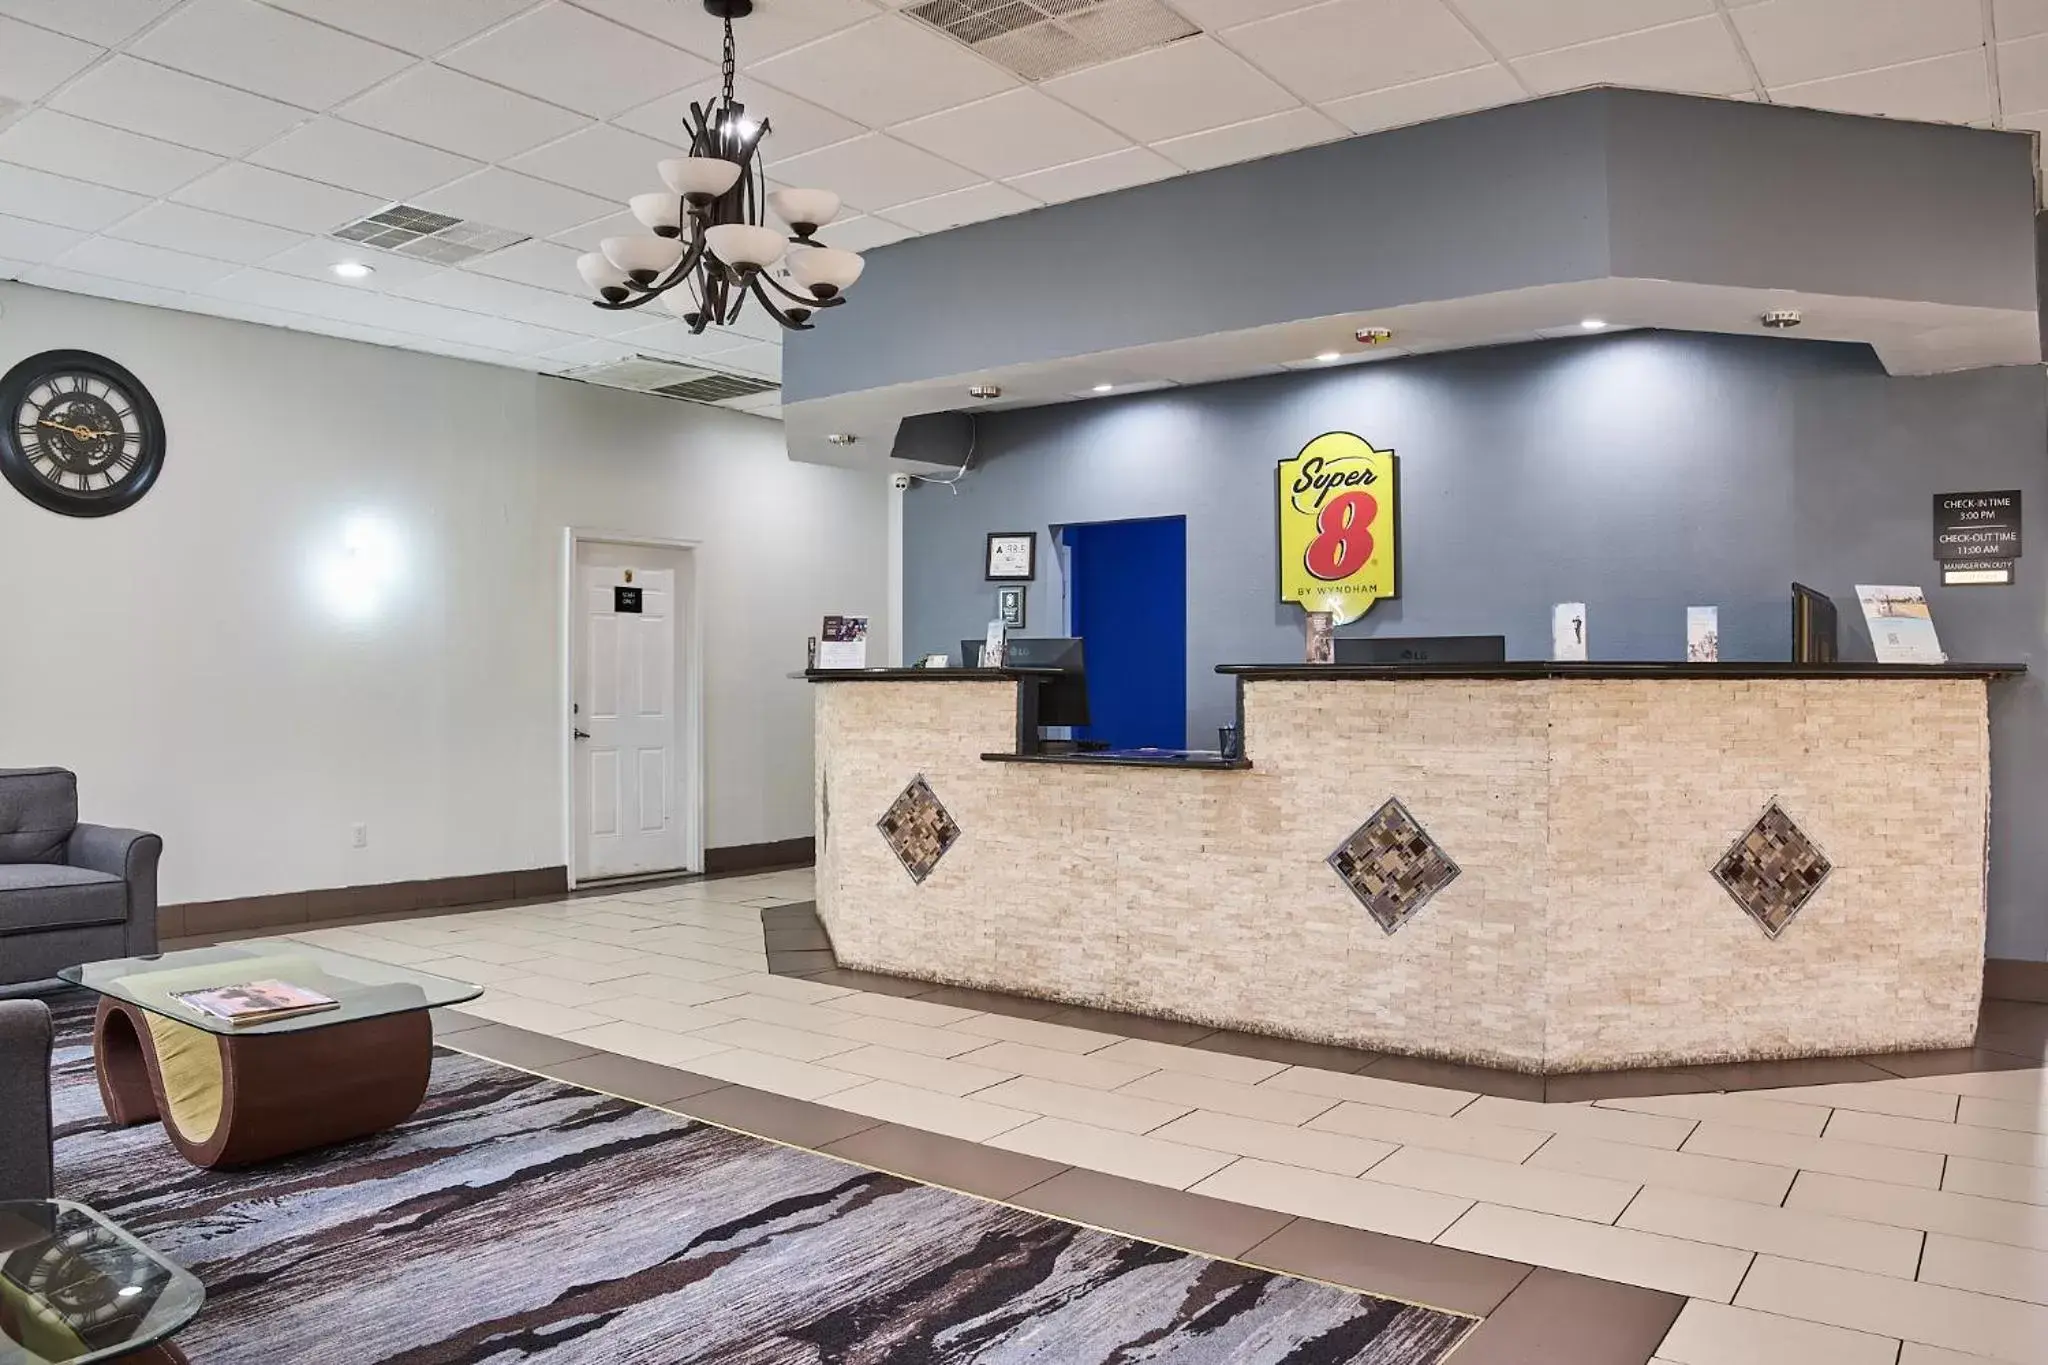 Lobby or reception, Lobby/Reception in Super 8 by Wyndham Garysburg/Roanoke Rapids